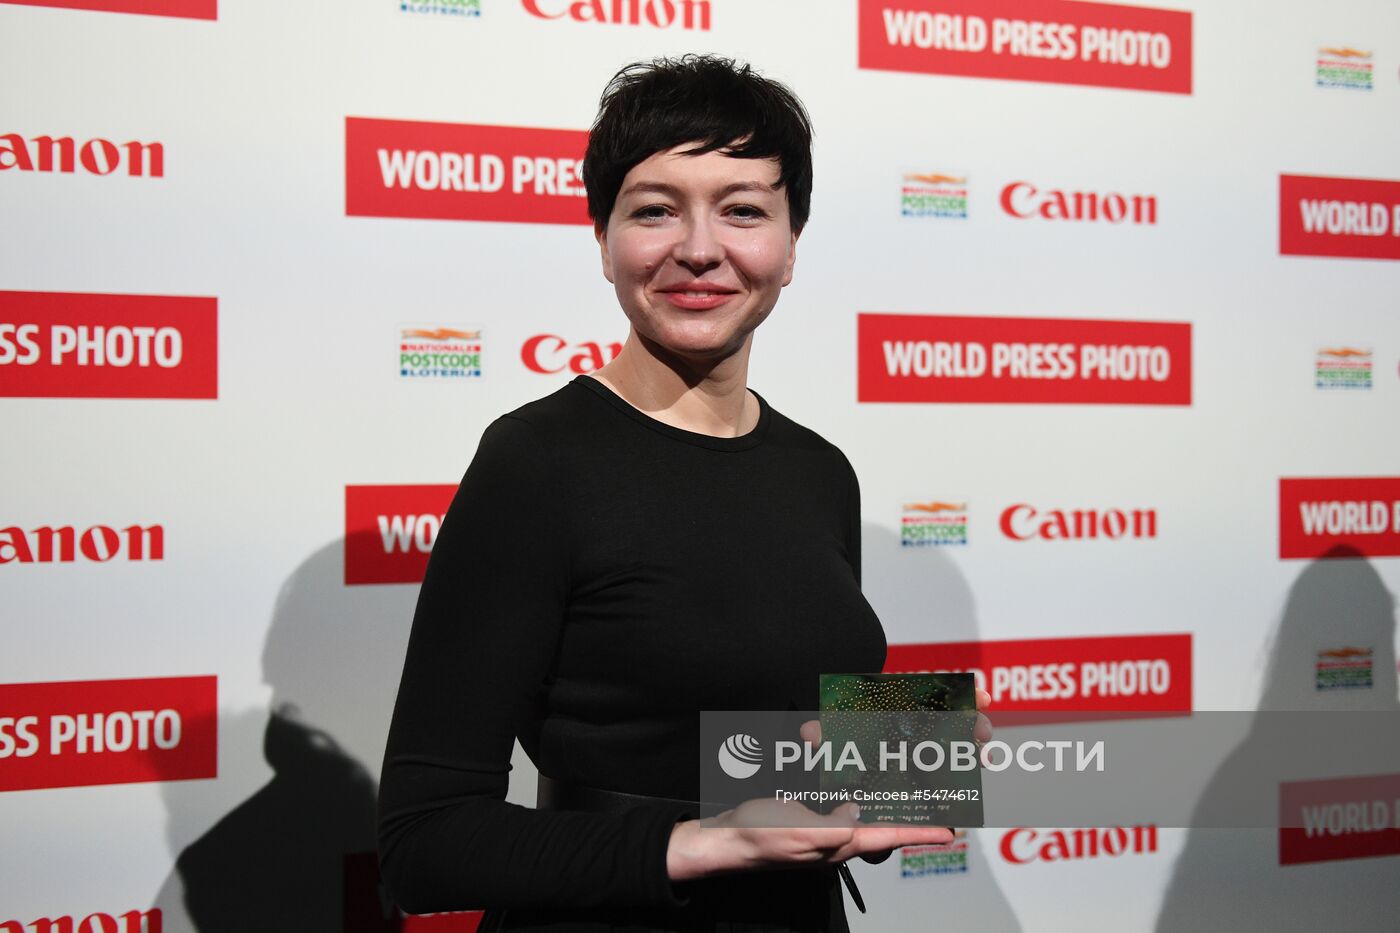 Фотокорреспонденту МИА "Россия сегодня" В. Мельникову вручили премию World Press Photo